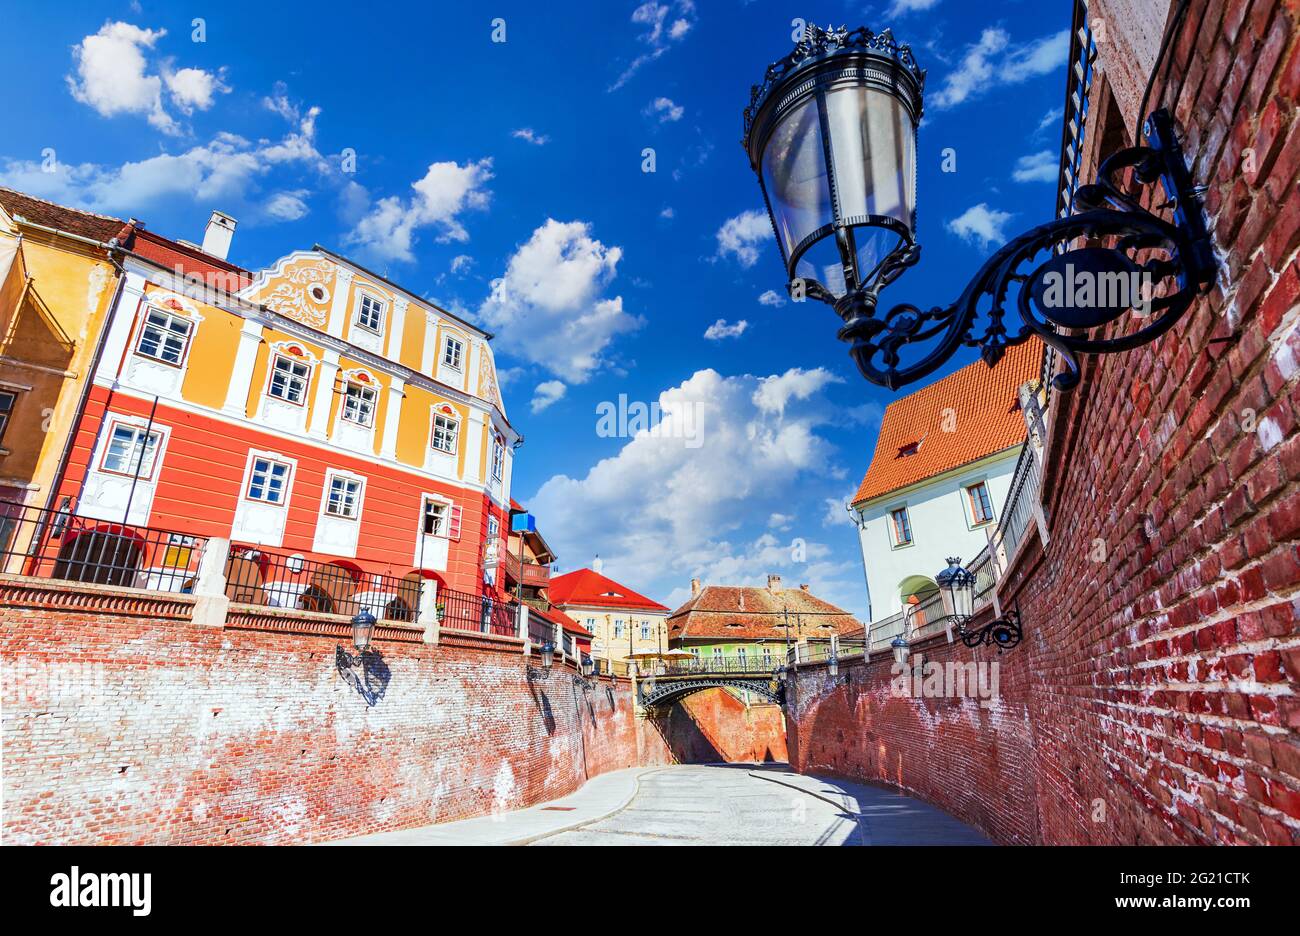 Sibiu, Rumänien. Historische Innenstadt der mittelalterlichen sächsischen Stadt in Siebenbürgen, Reise-Website in Osteuropa. Berühmte Liar's Bridge. Stockfoto